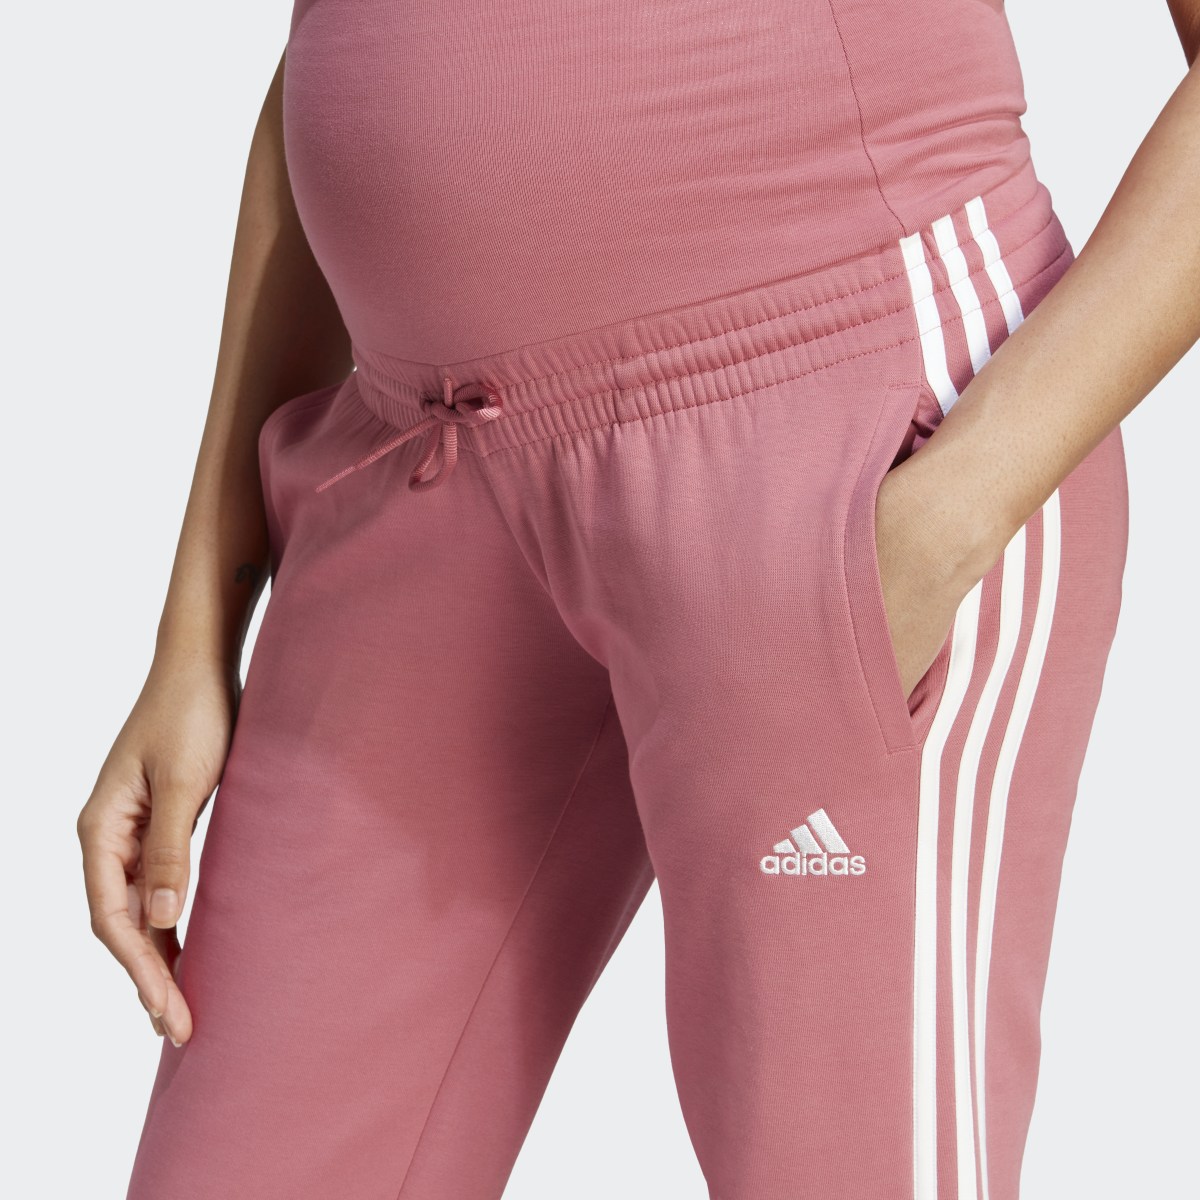 Adidas Pantaloni Maternity. 5